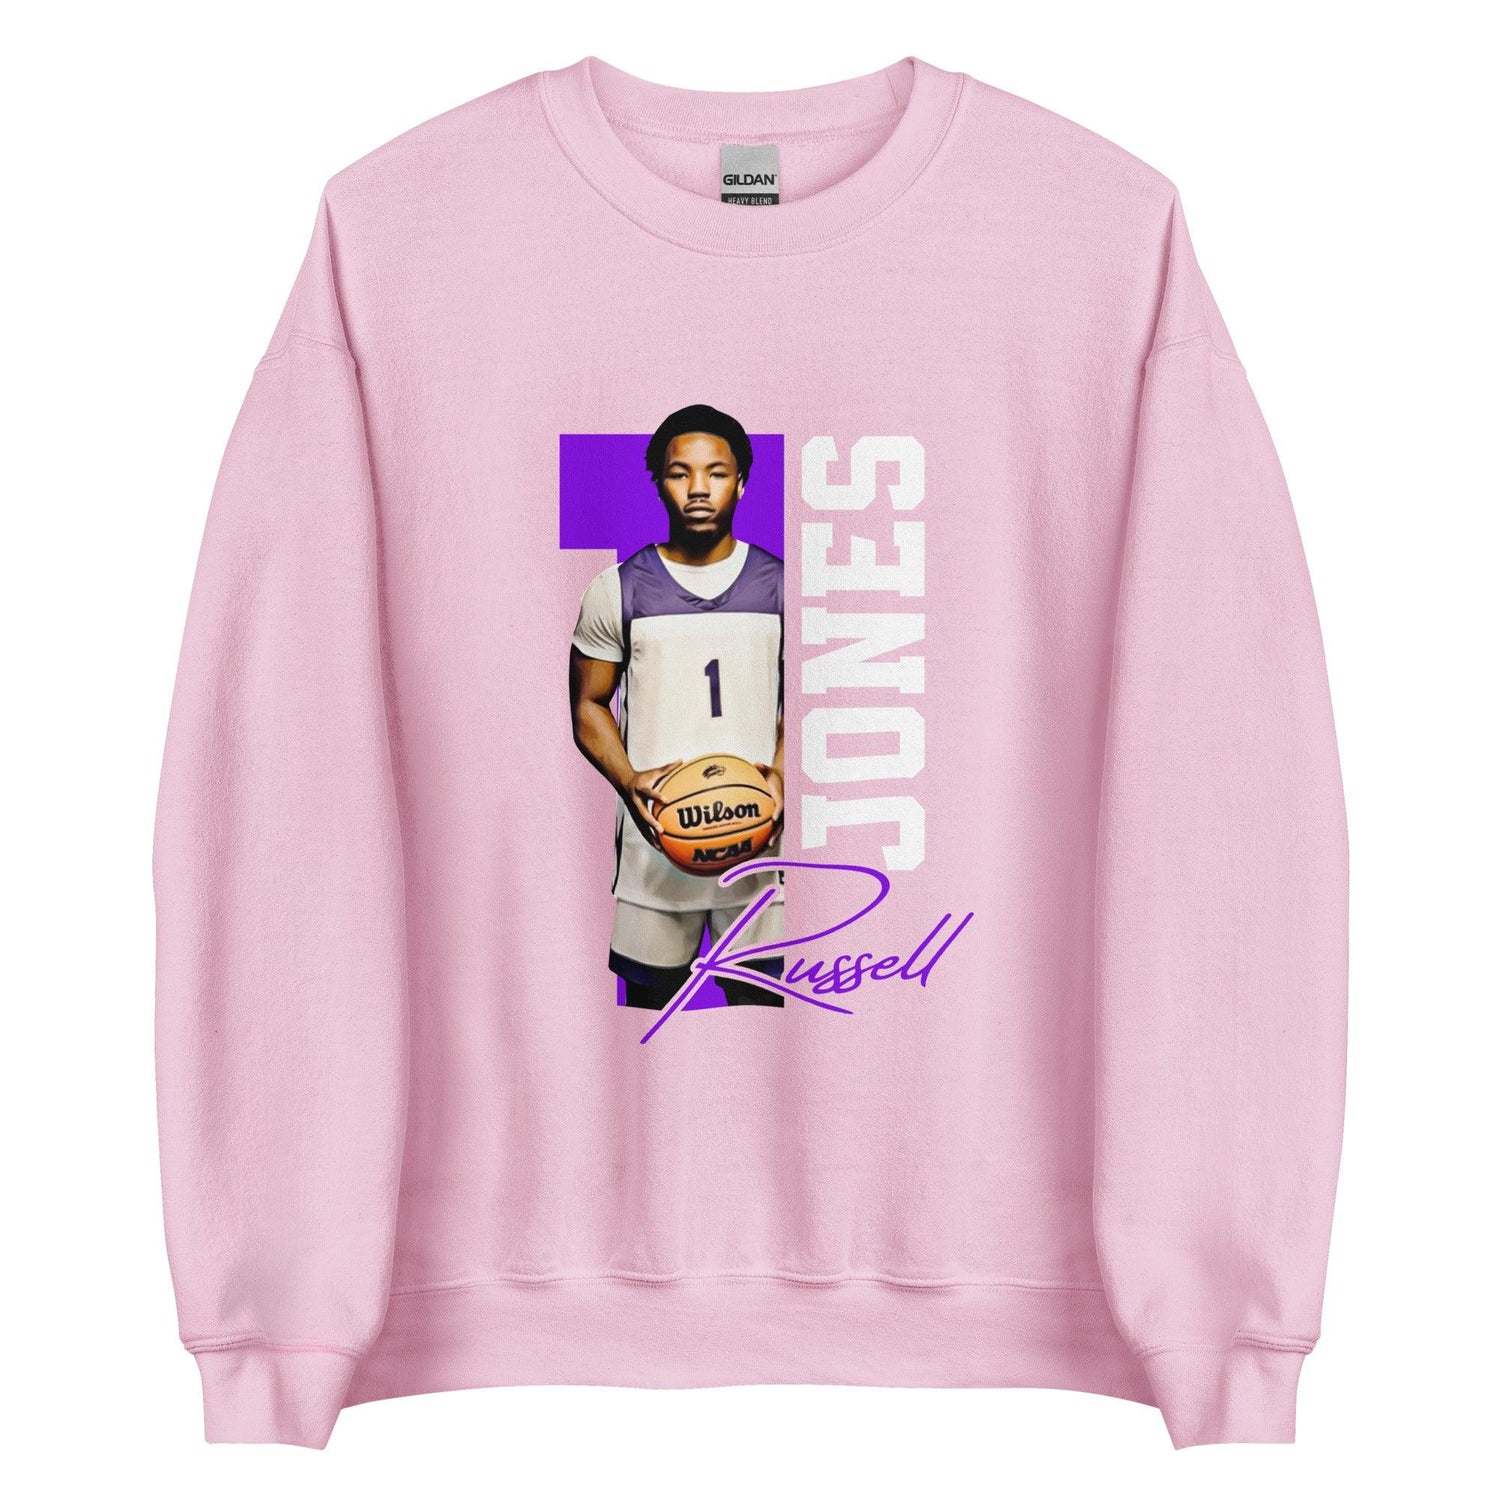 Russell Jones “Essential” Sweatshirt - Fan Arch